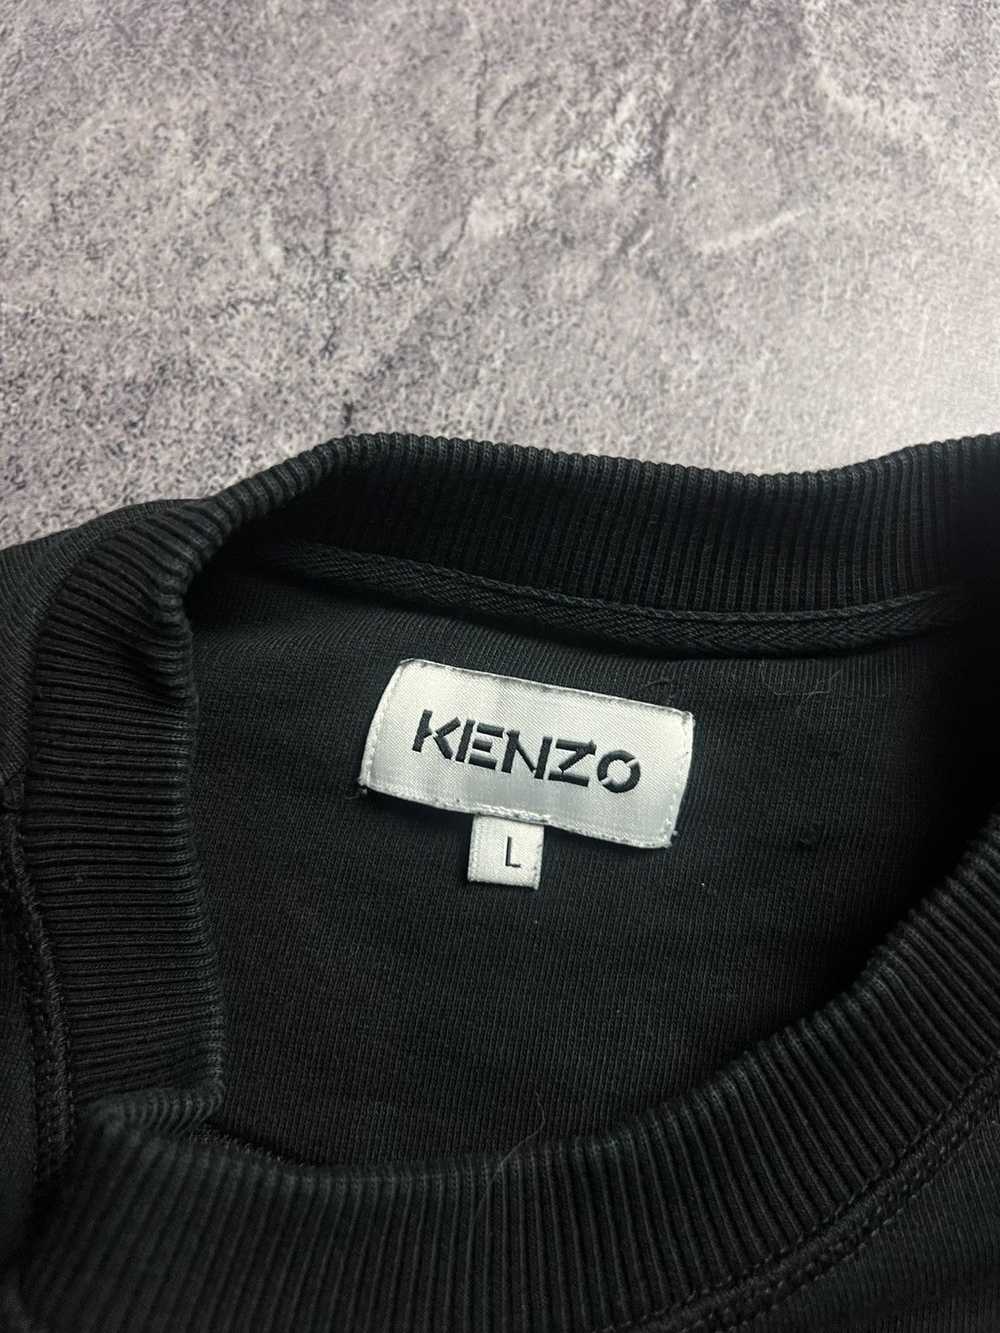 Designer × Kenzo × Streetwear Kenzo Paris big log… - image 4